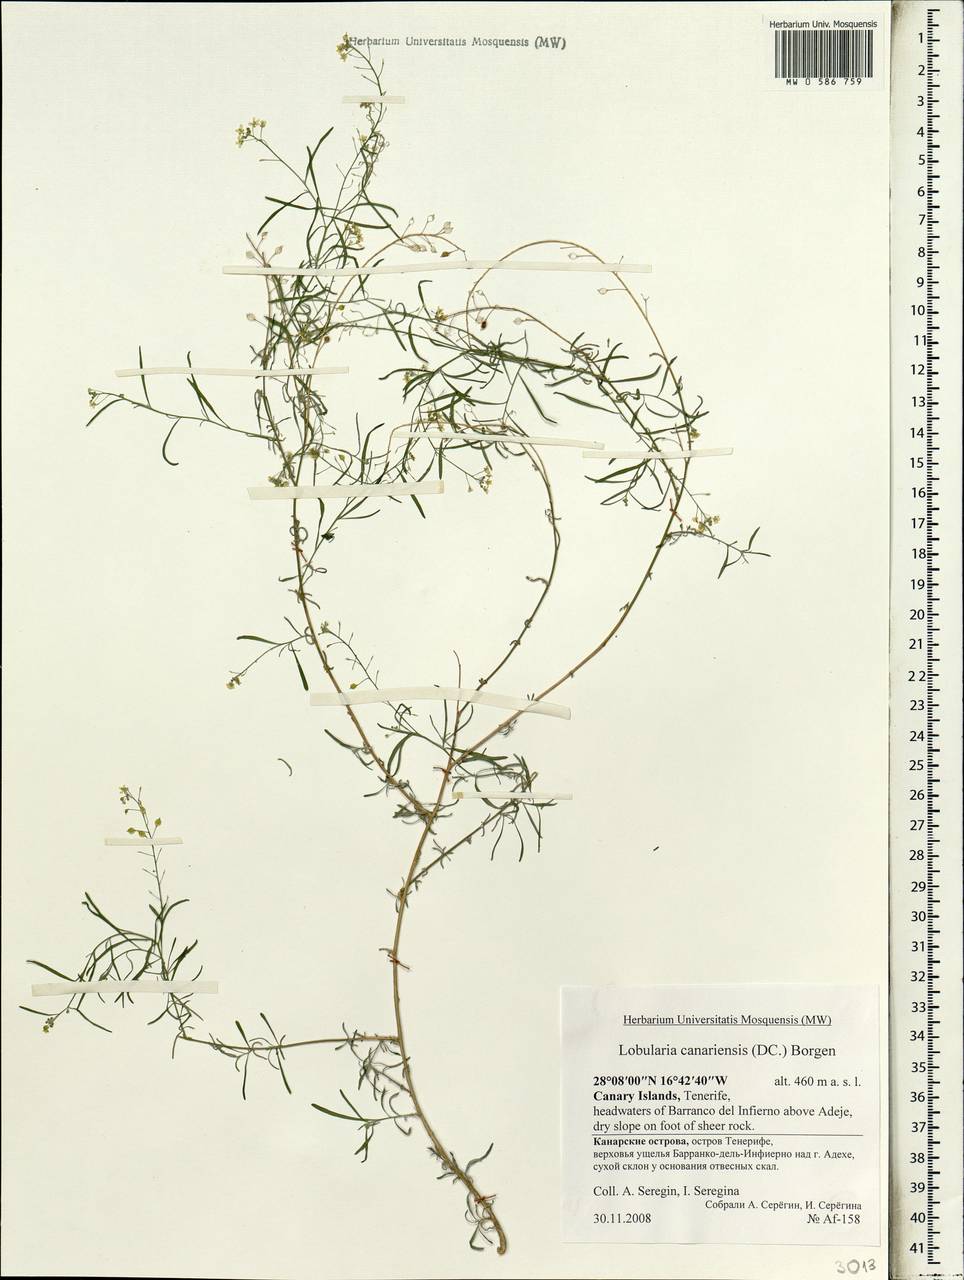 Lobularia canariensis (DC.) L. Borgen, Африка (AFR) (Испания)